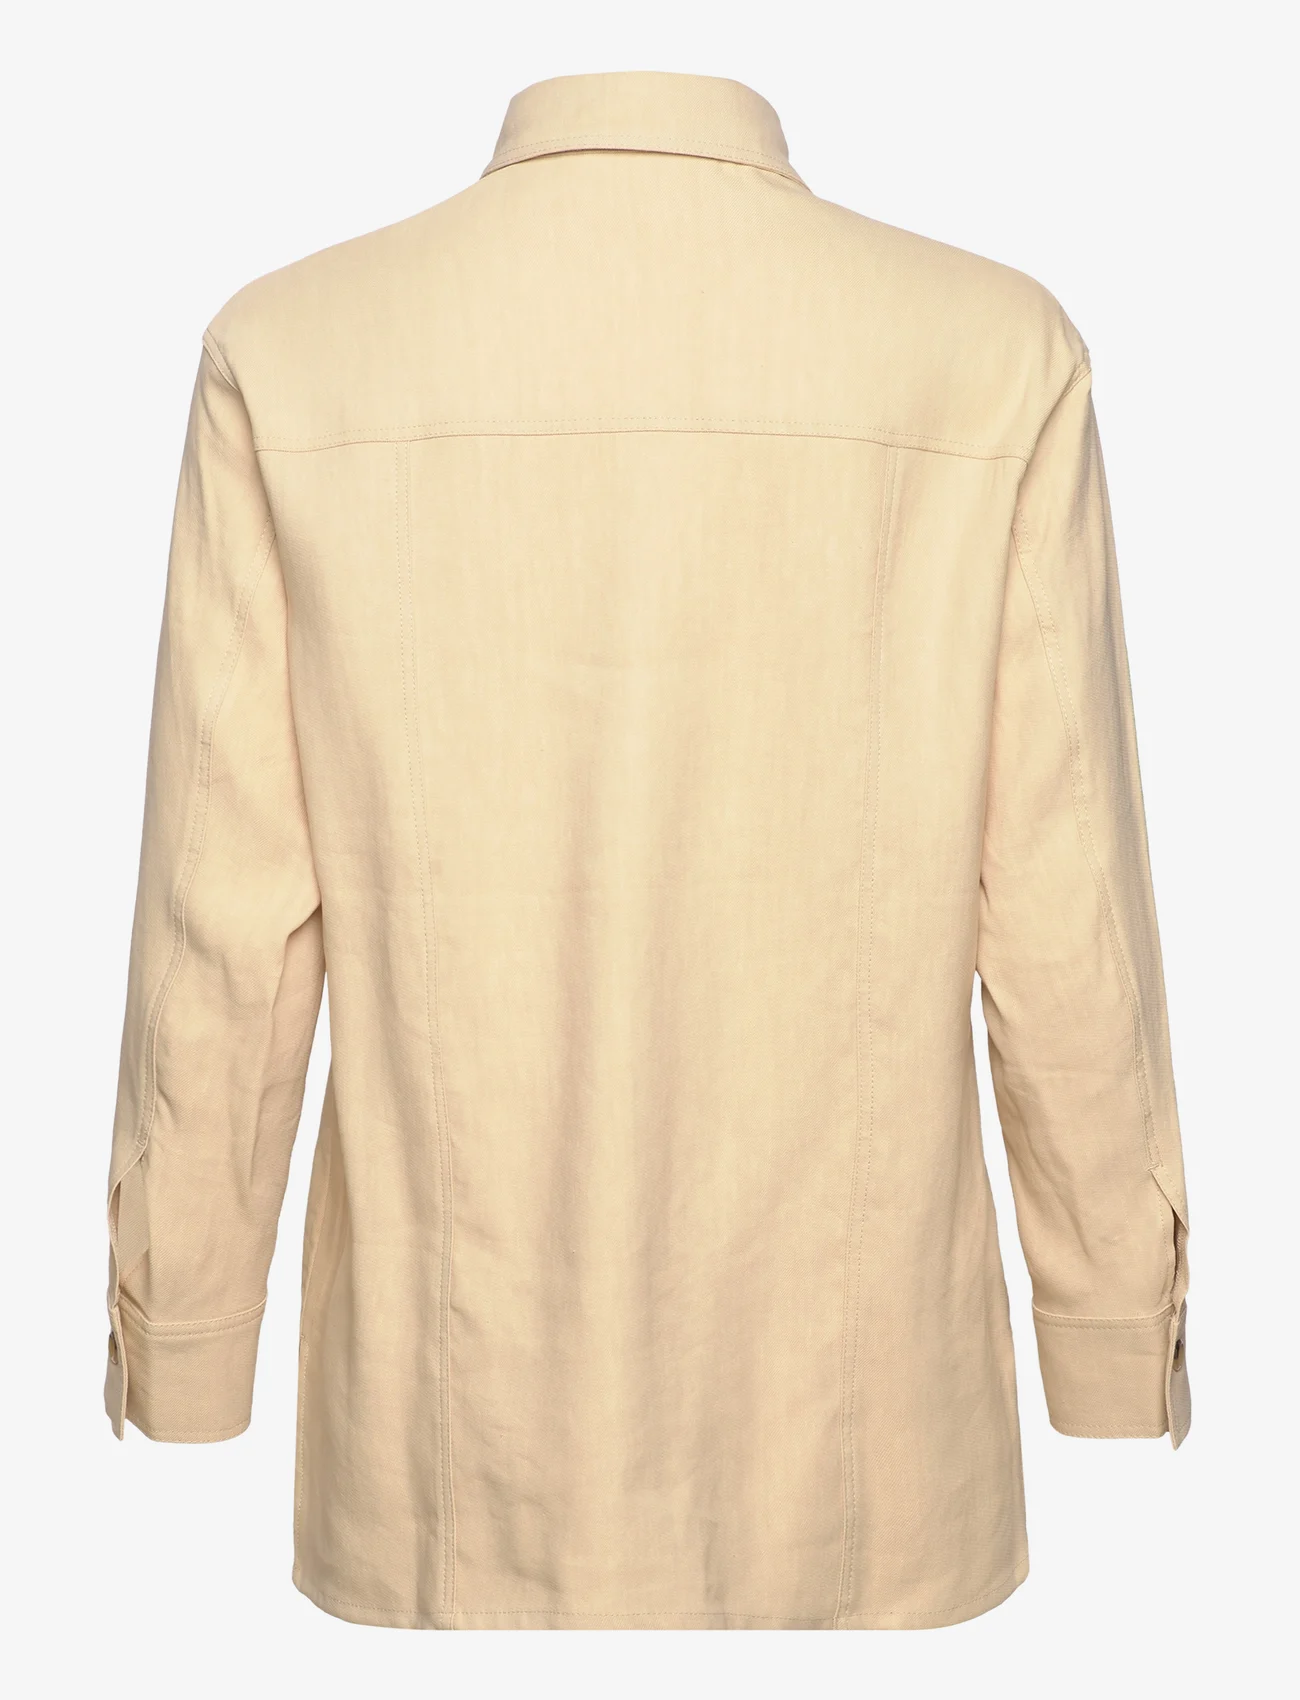 RODEBJER - RODEBJER ARIA - lininiai marškiniai - warm sand - 1